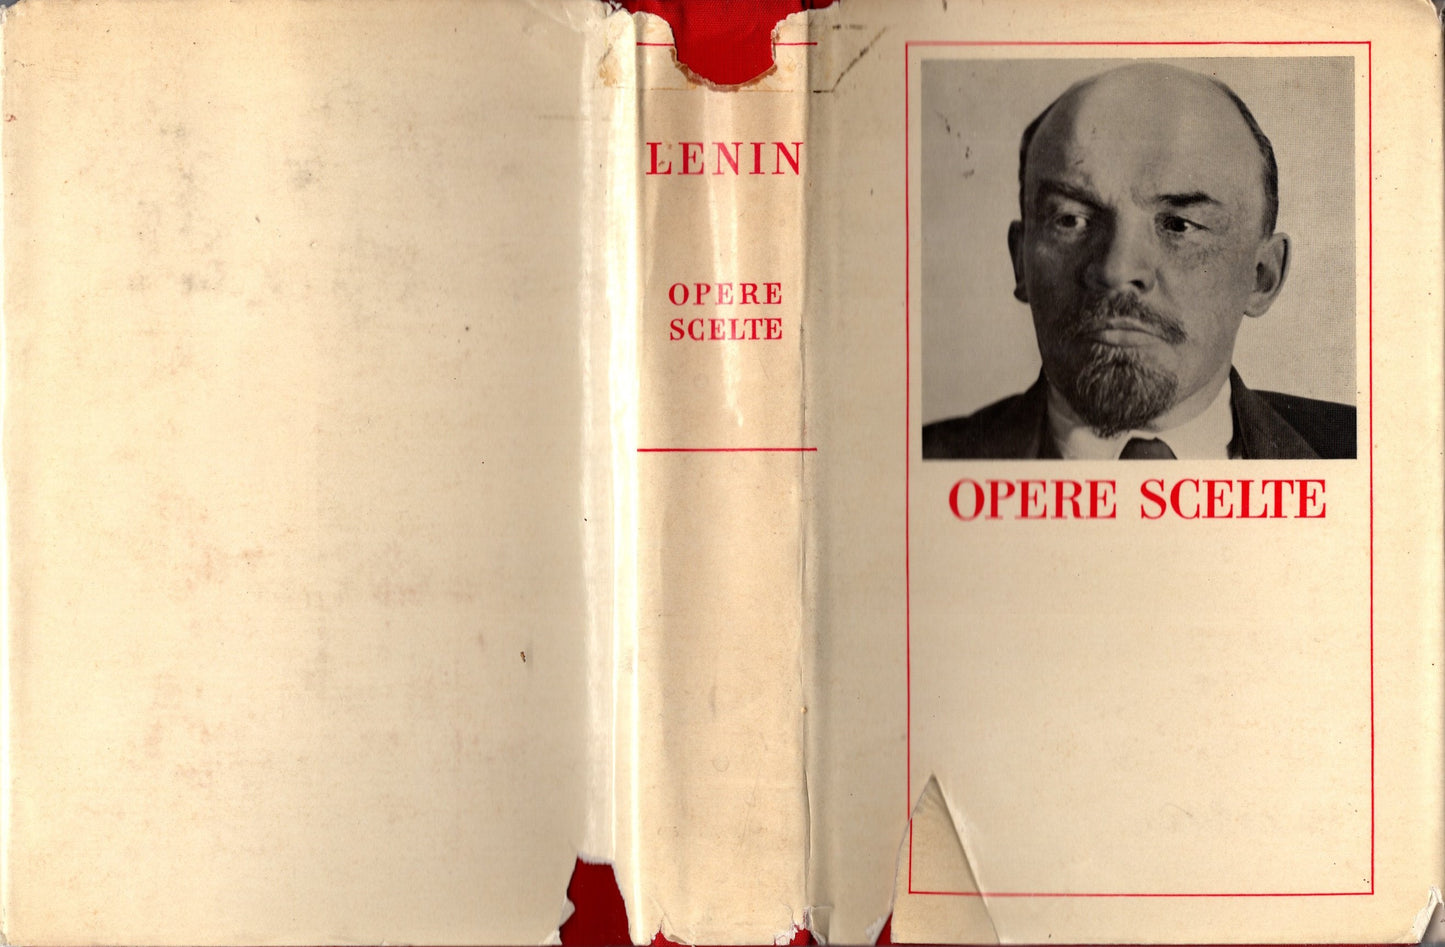 Lenin Opere scelte